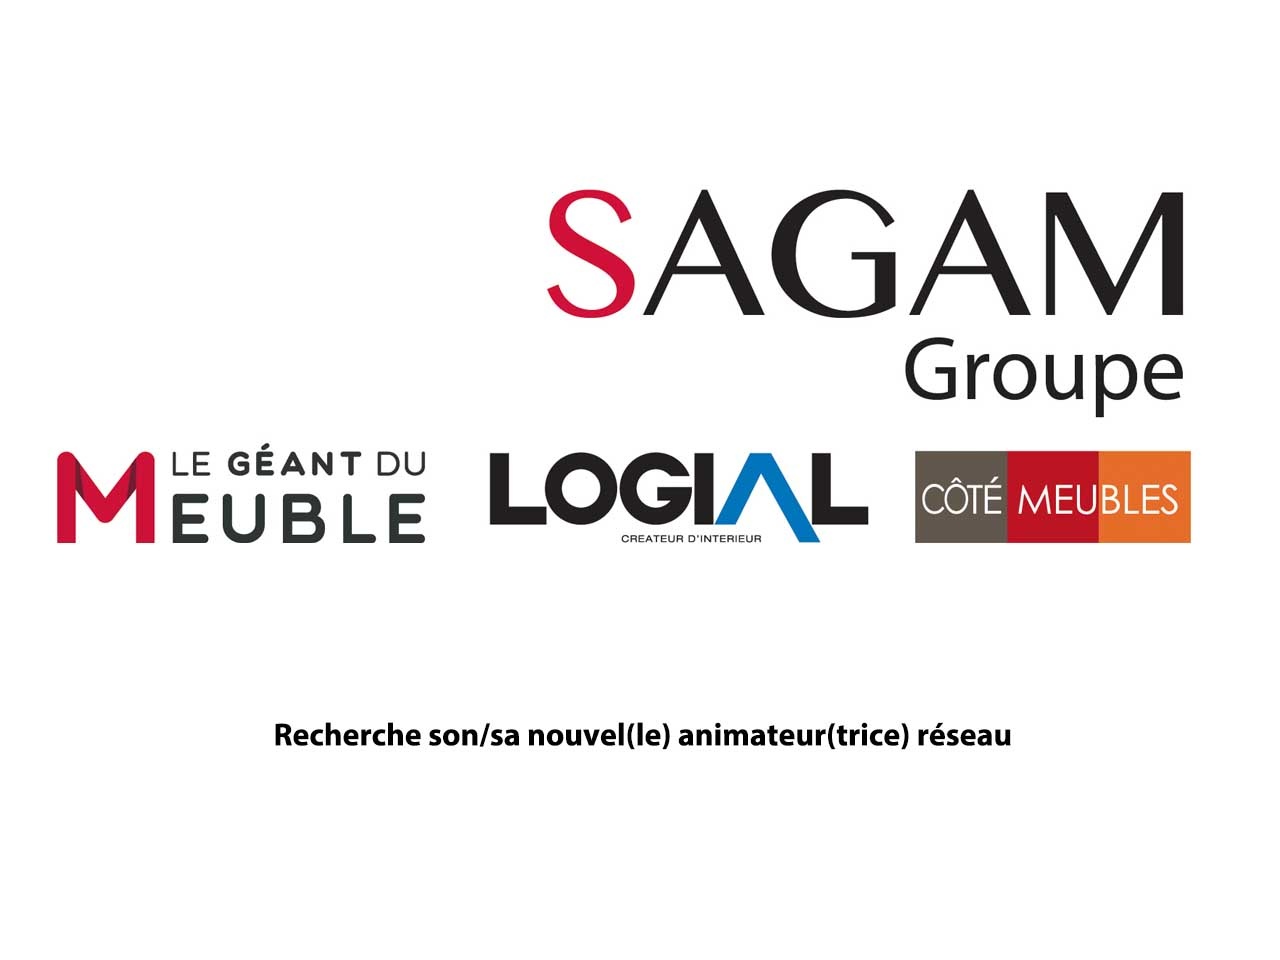 Le groupe SAGAM recherche son/sa nouvel(le) animateur(trice) réseau !